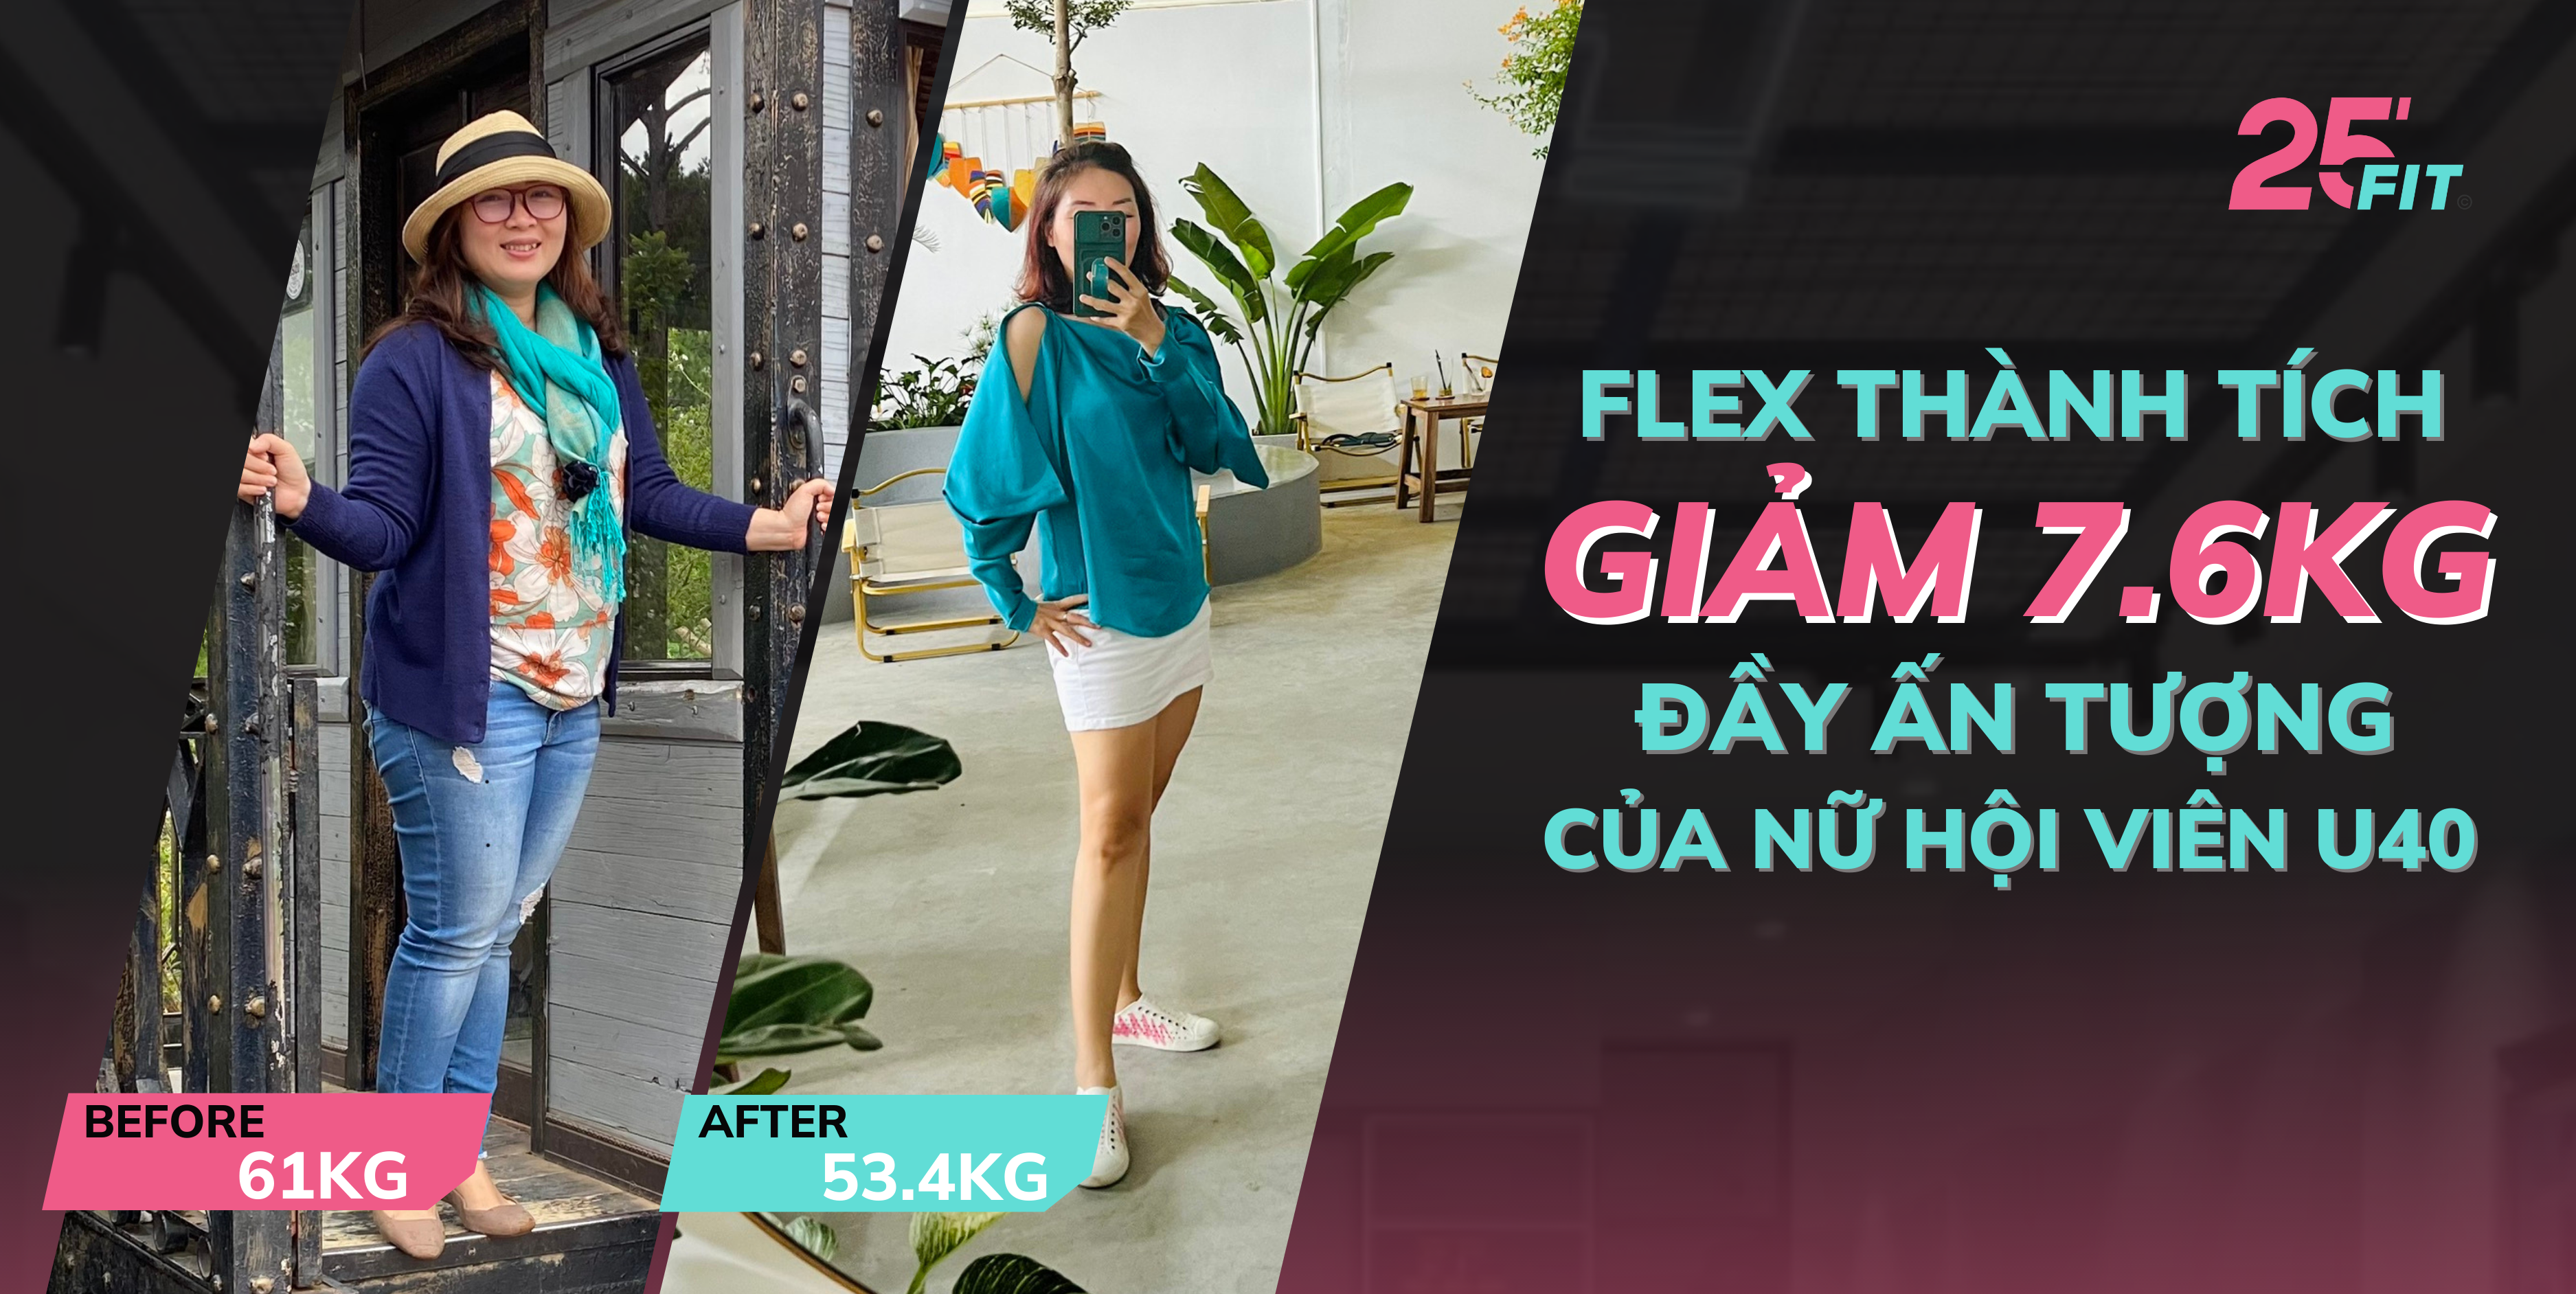 Flex thành tích giảm 7.6kg đầy ấn tượng của nữ hội viên U40